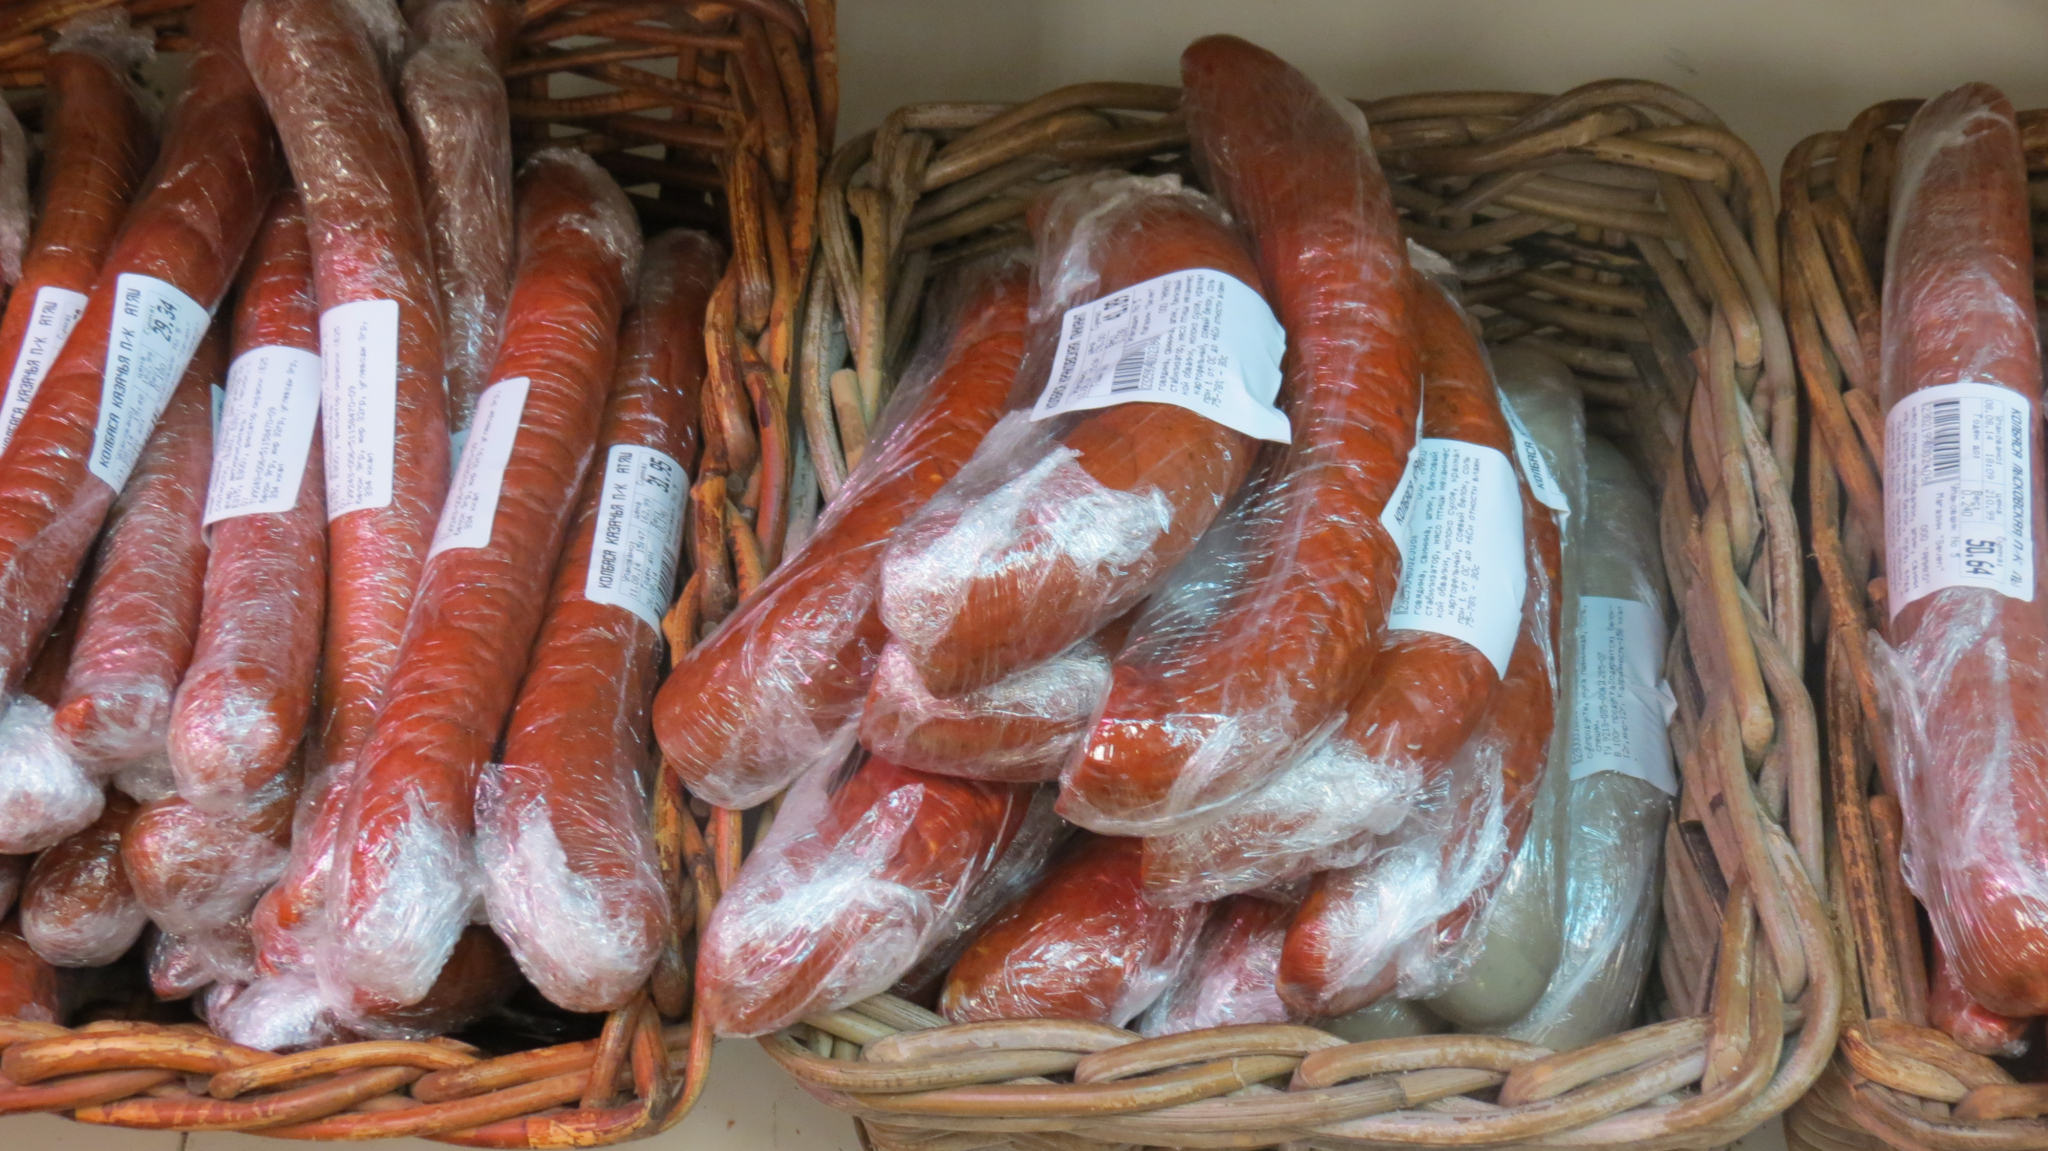 Полукопченную колбасу, способную поразить нервную систему, изготавливали в Нижегородской области